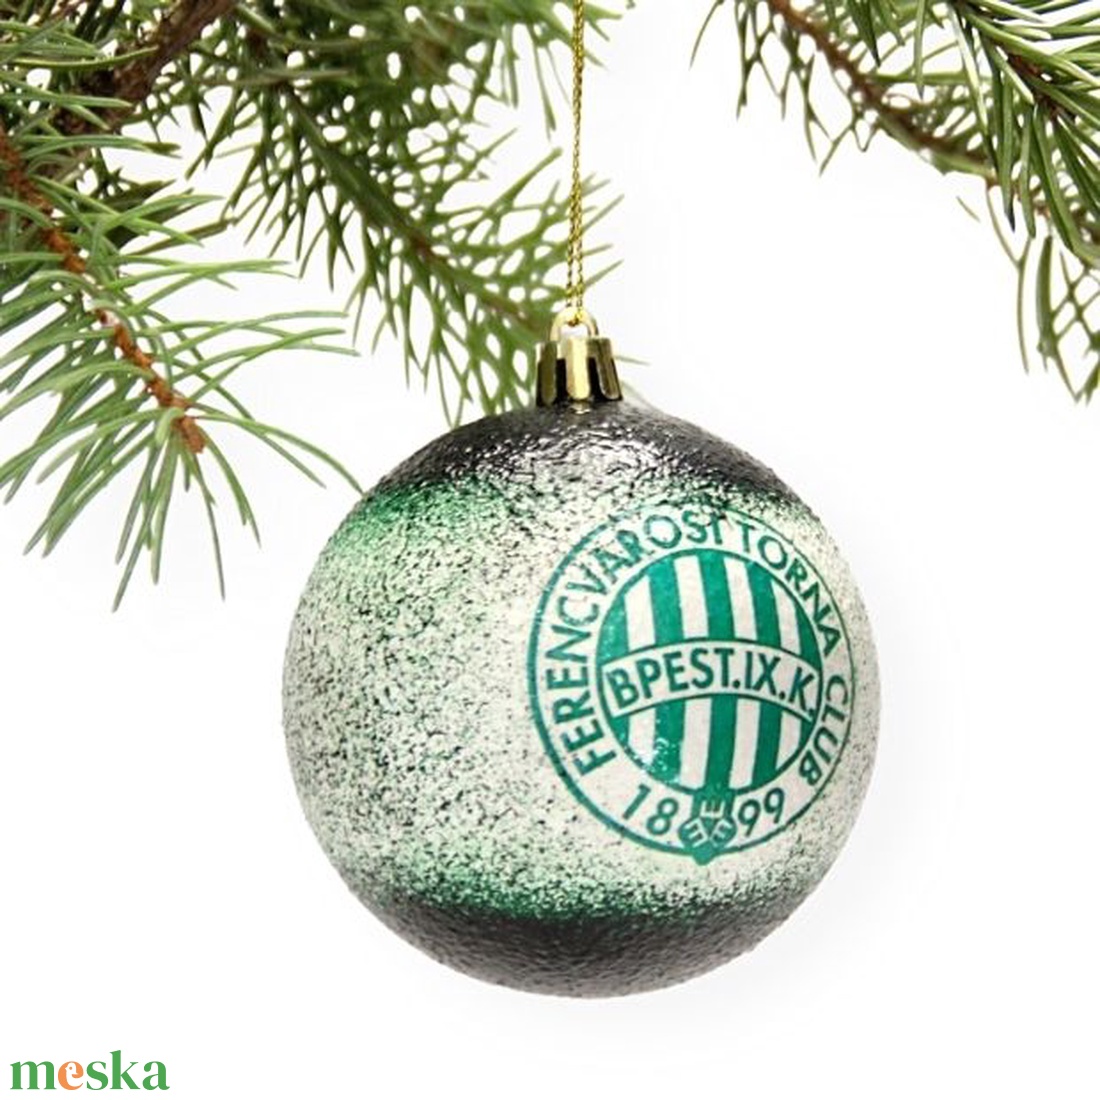 Karácsonyfa gömb foci témájú emblémával - FTC  szurkolóknak   -  párodnak mikulásra és karácsonyra  - karácsony - karácsonyi lakásdekoráció - karácsonyfadíszek - Meska.hu